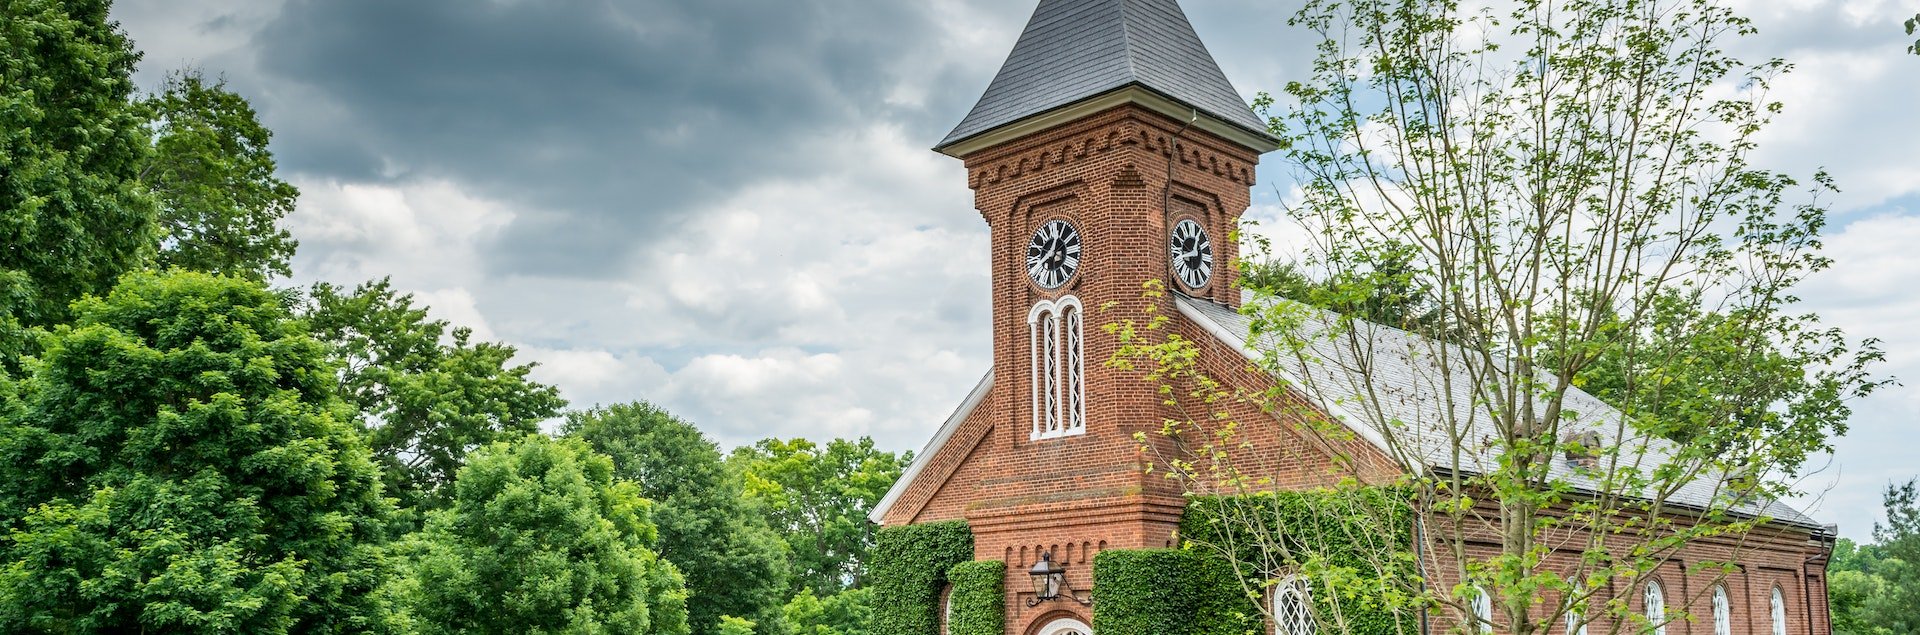 University Chapel in Virginia